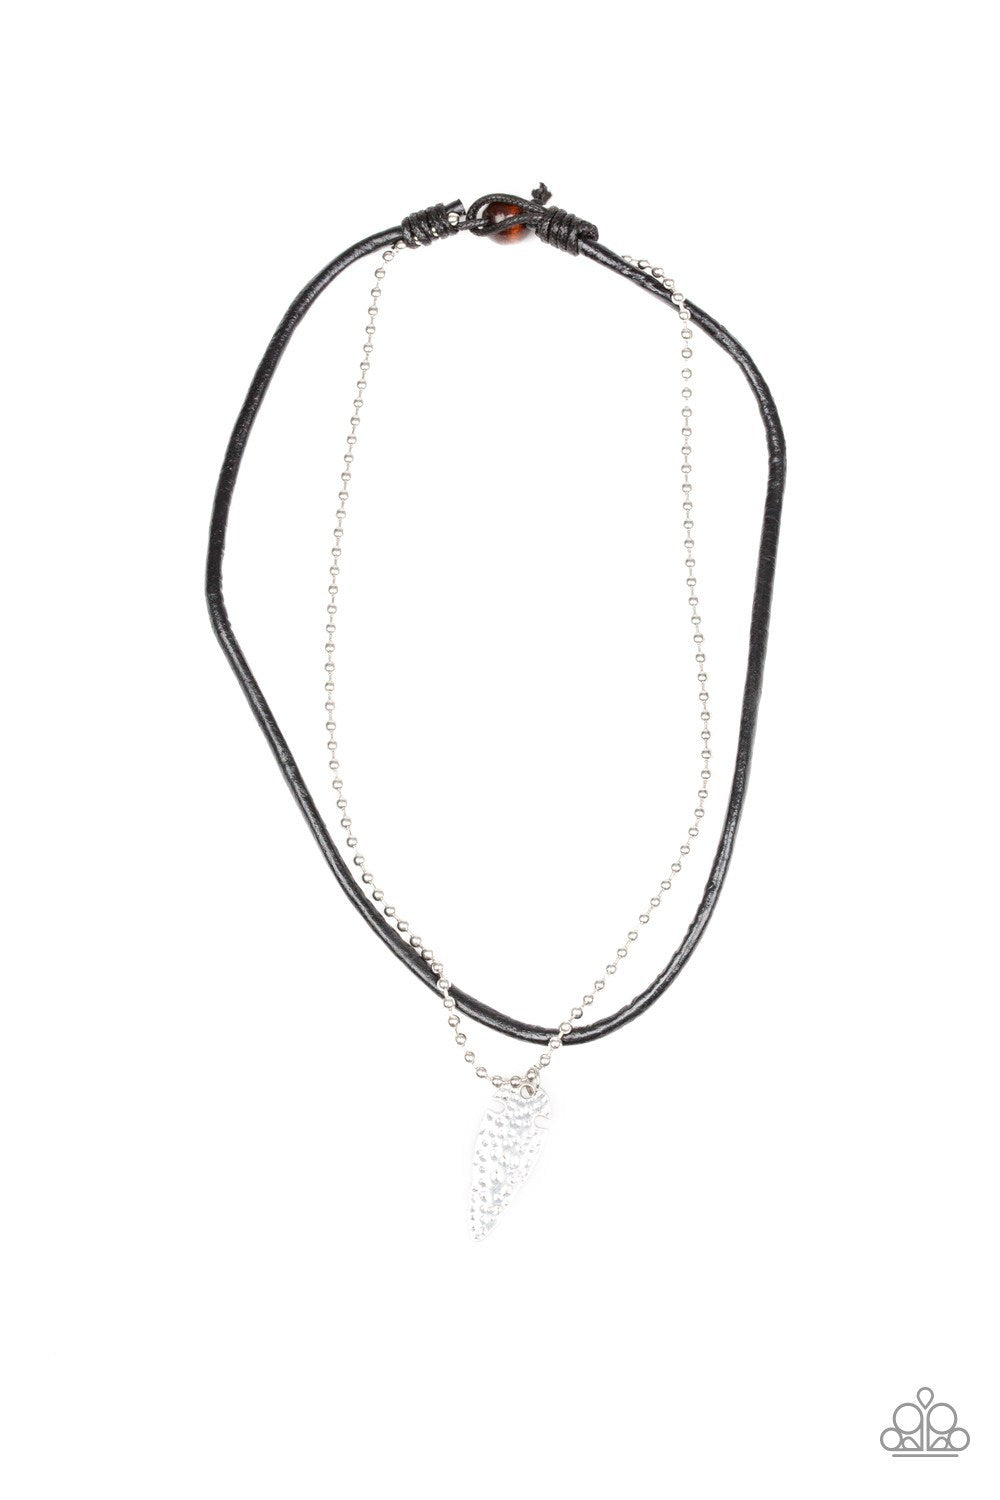 Arrowhead Anvil Urban Silver Necklace